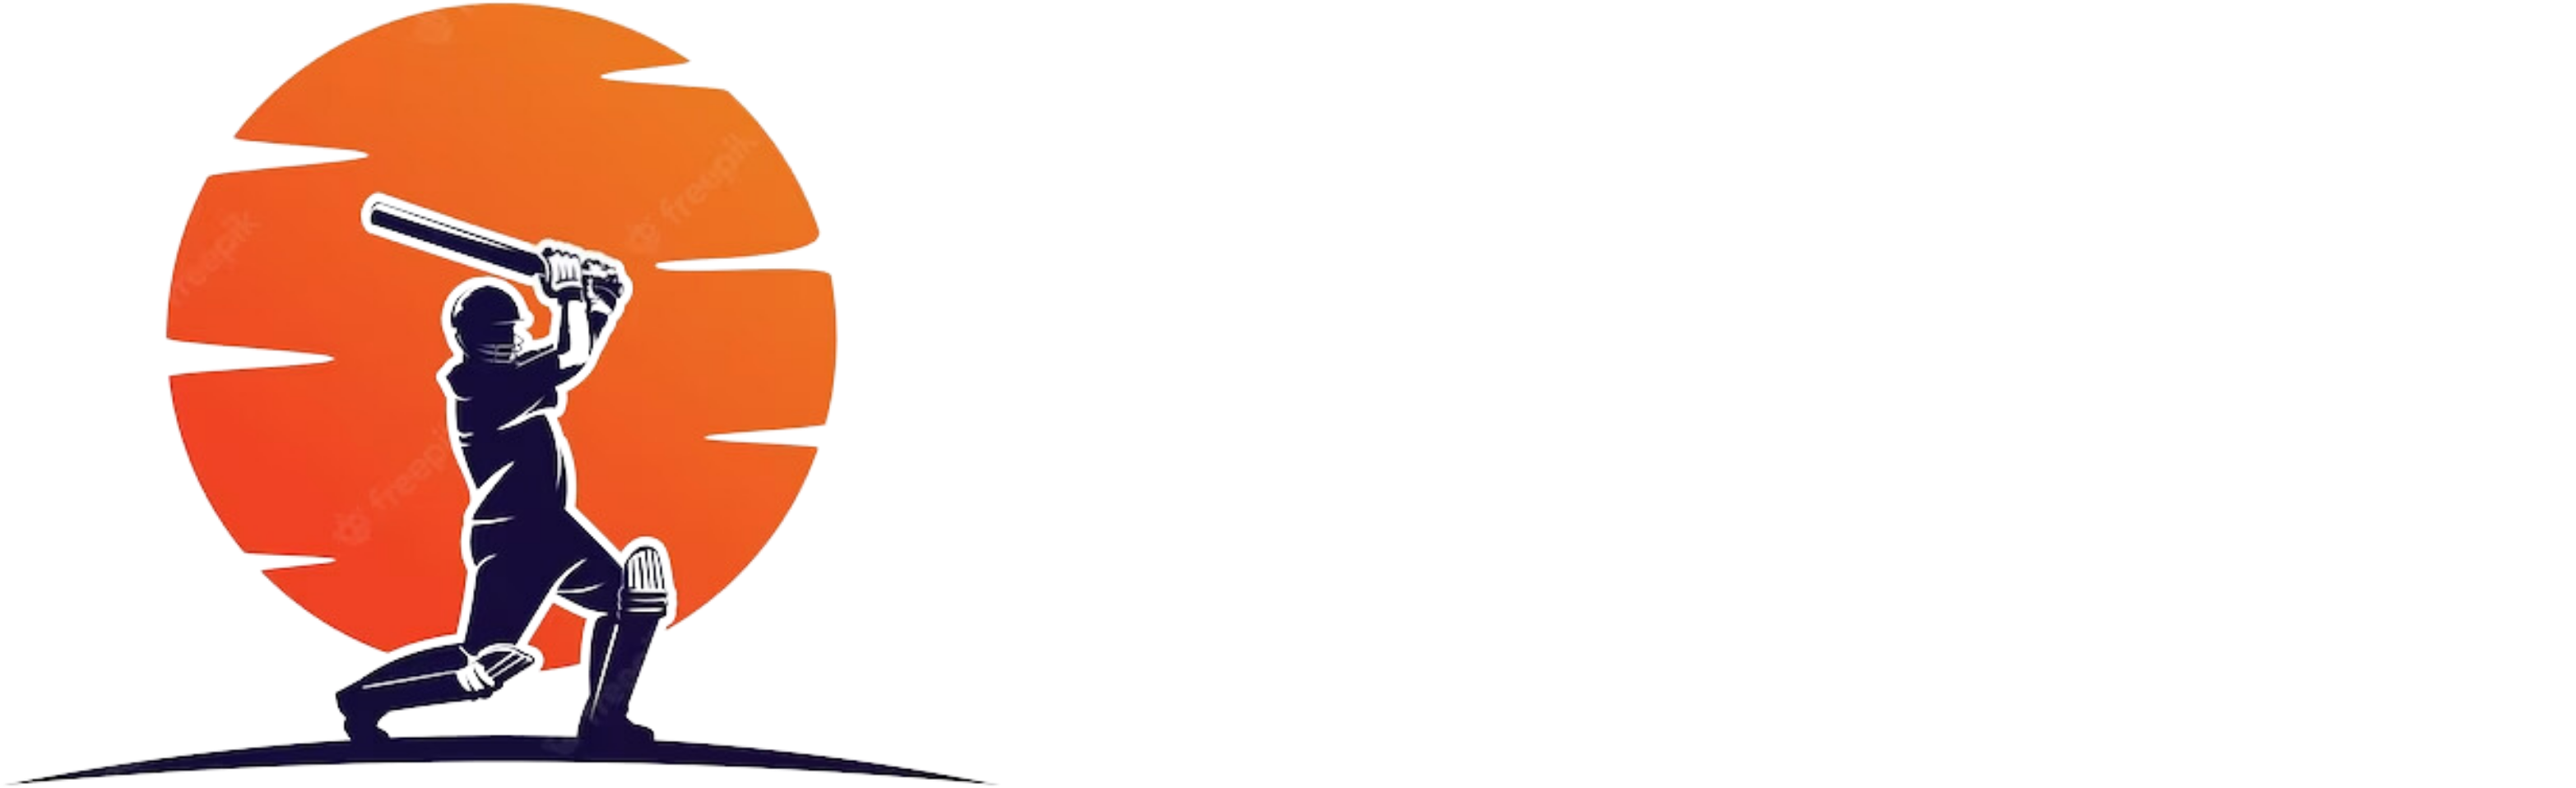 PDM999.OM